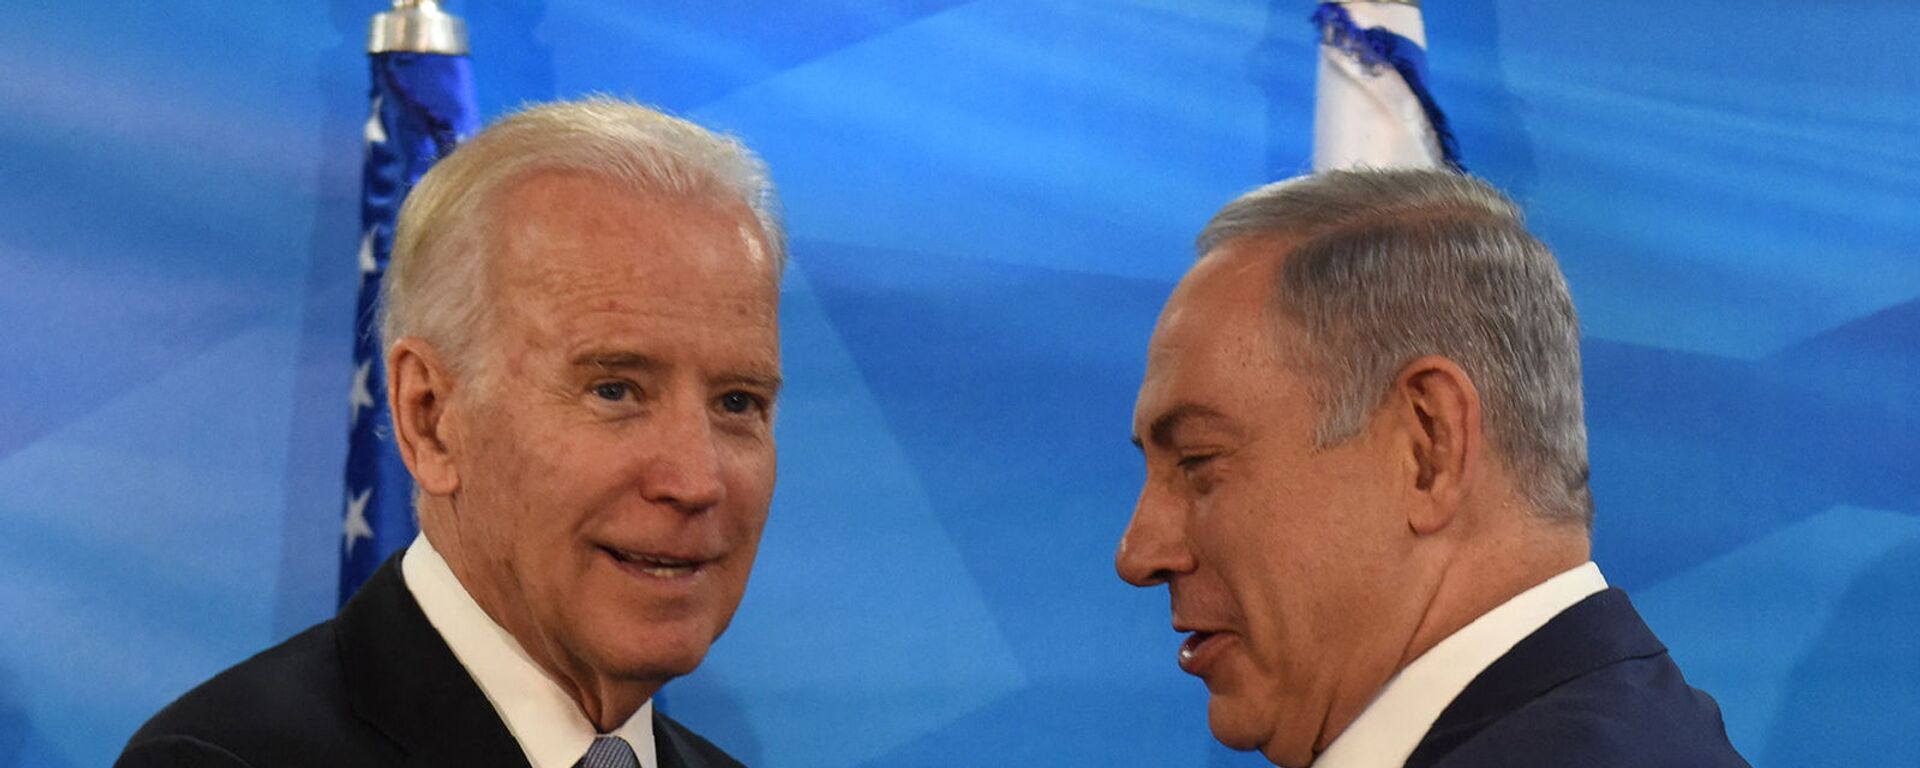 Вице-президент США Джо Байден и премьер-министр Израиля Биньямин Нетаньяху пожимают друг другу руки (9 марта 2016).  - Sputnik Армения, 1920, 12.05.2021